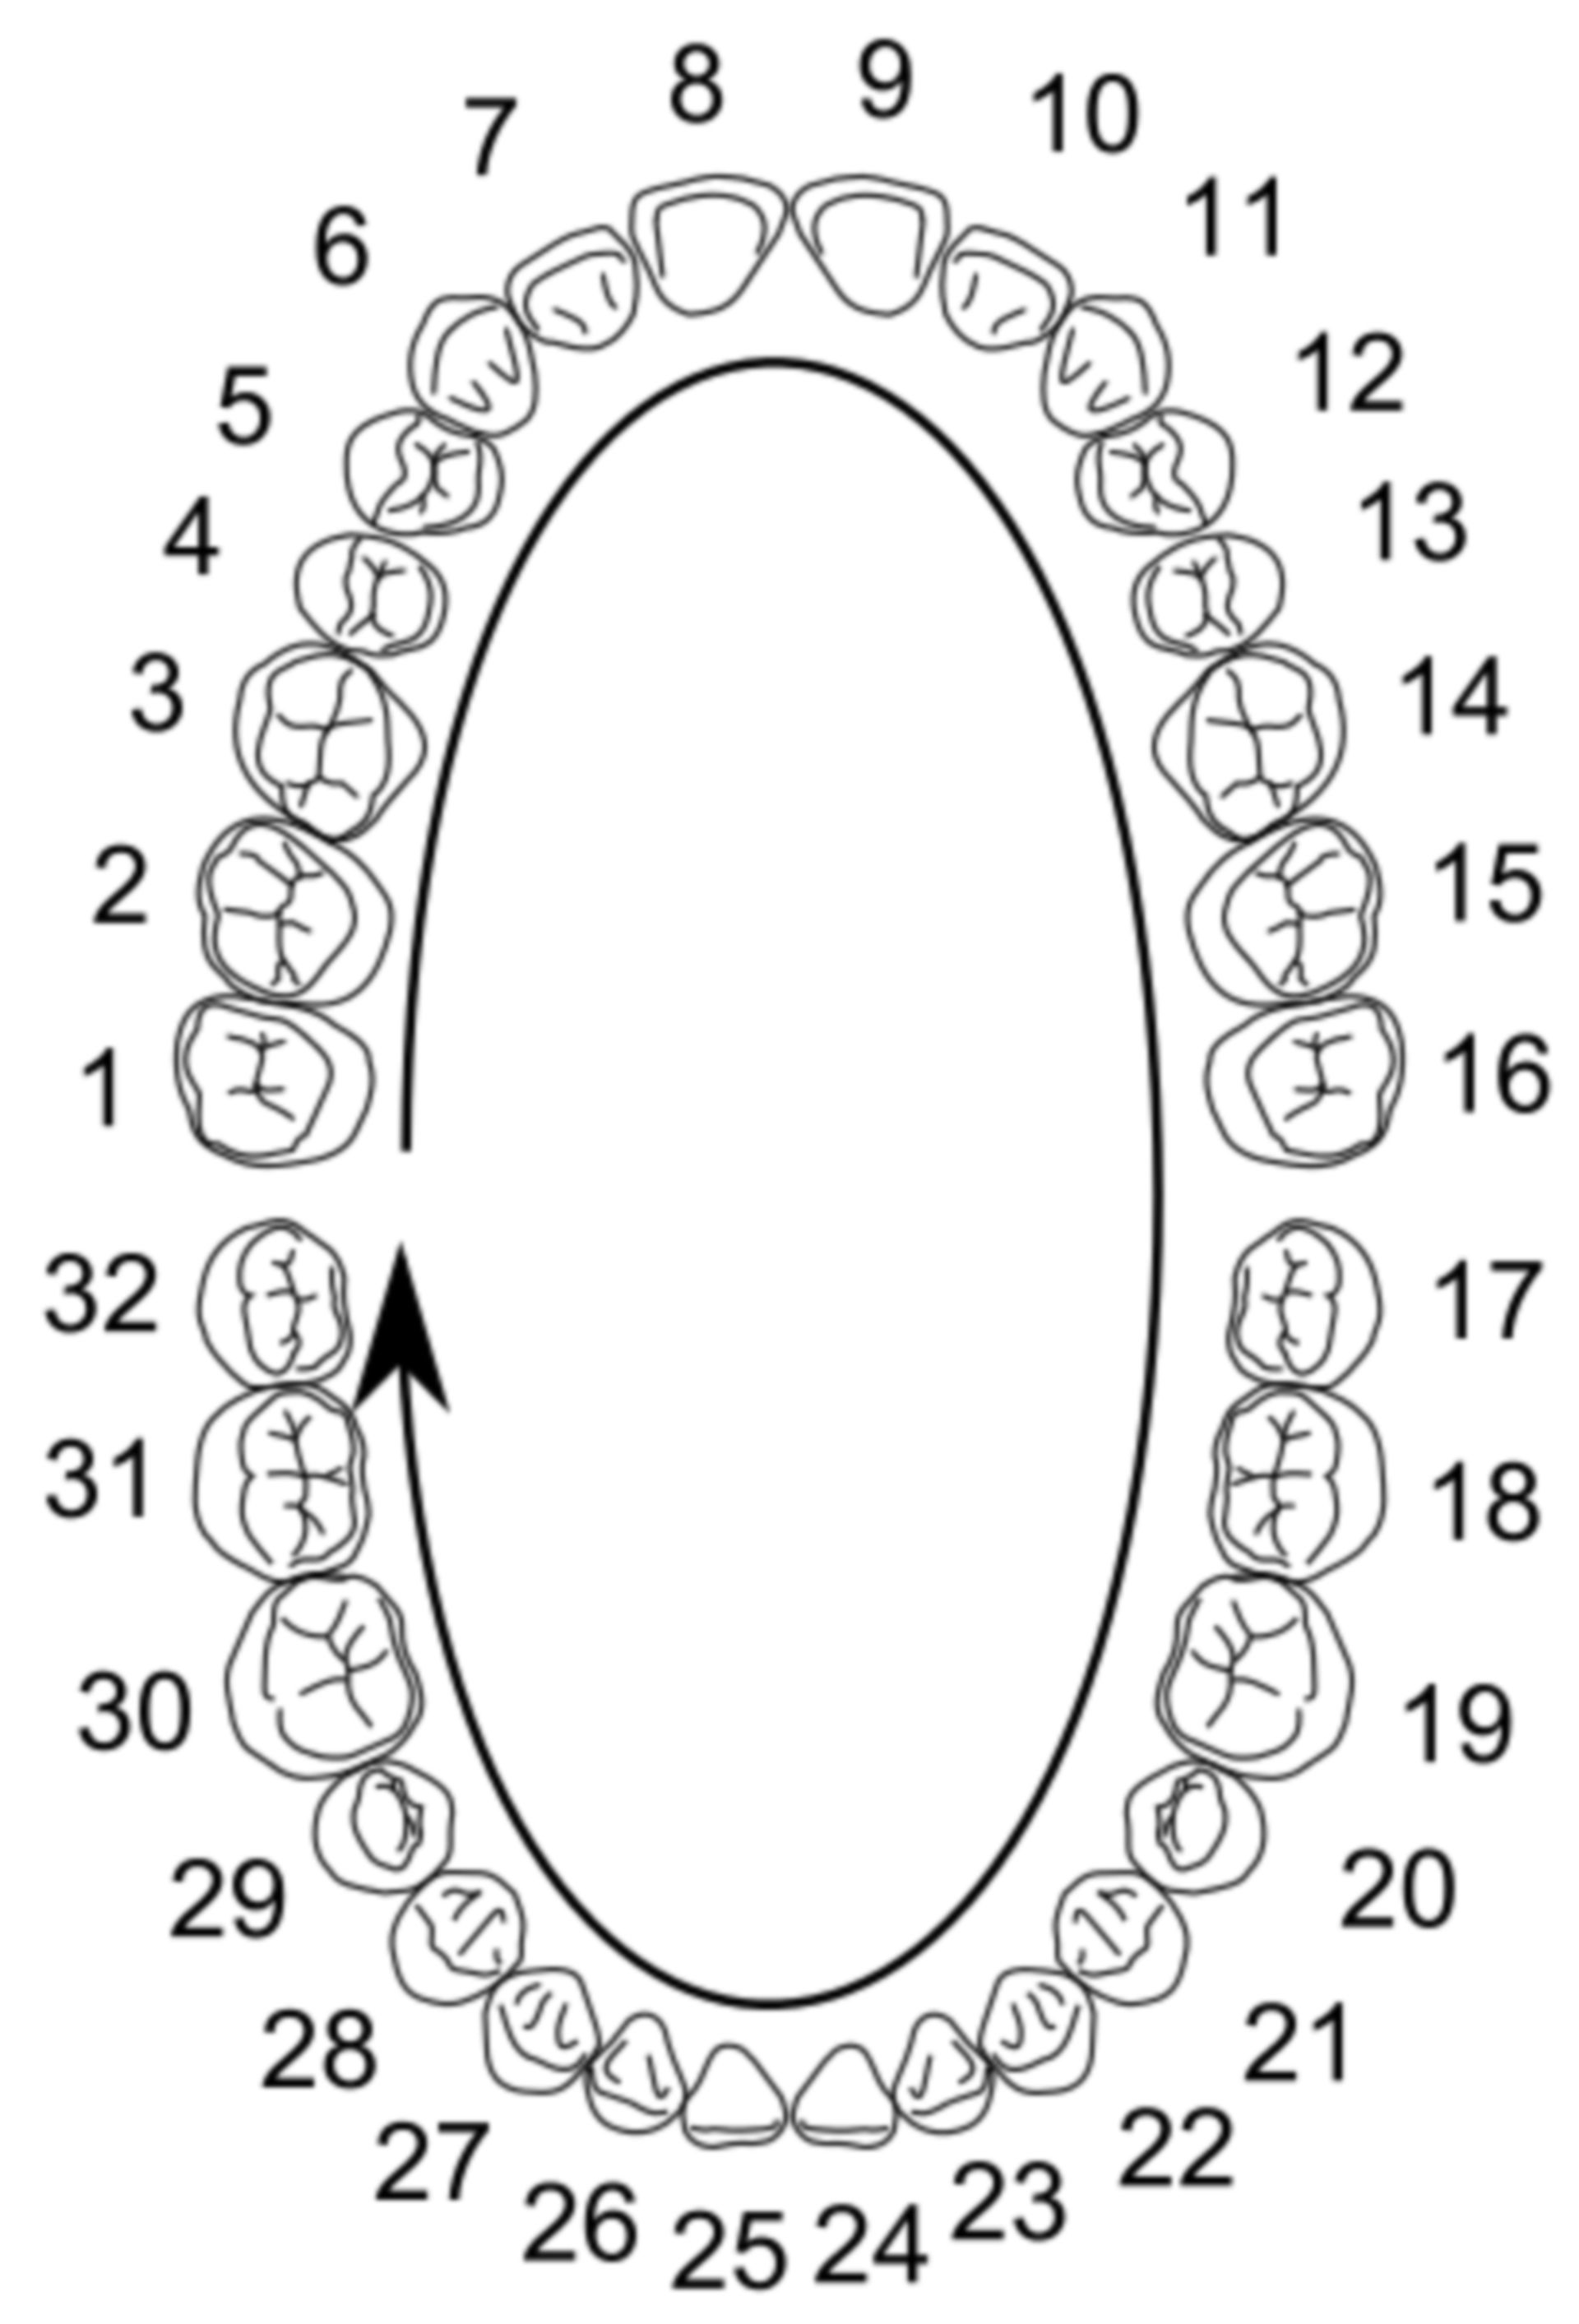 International numbering of teeth